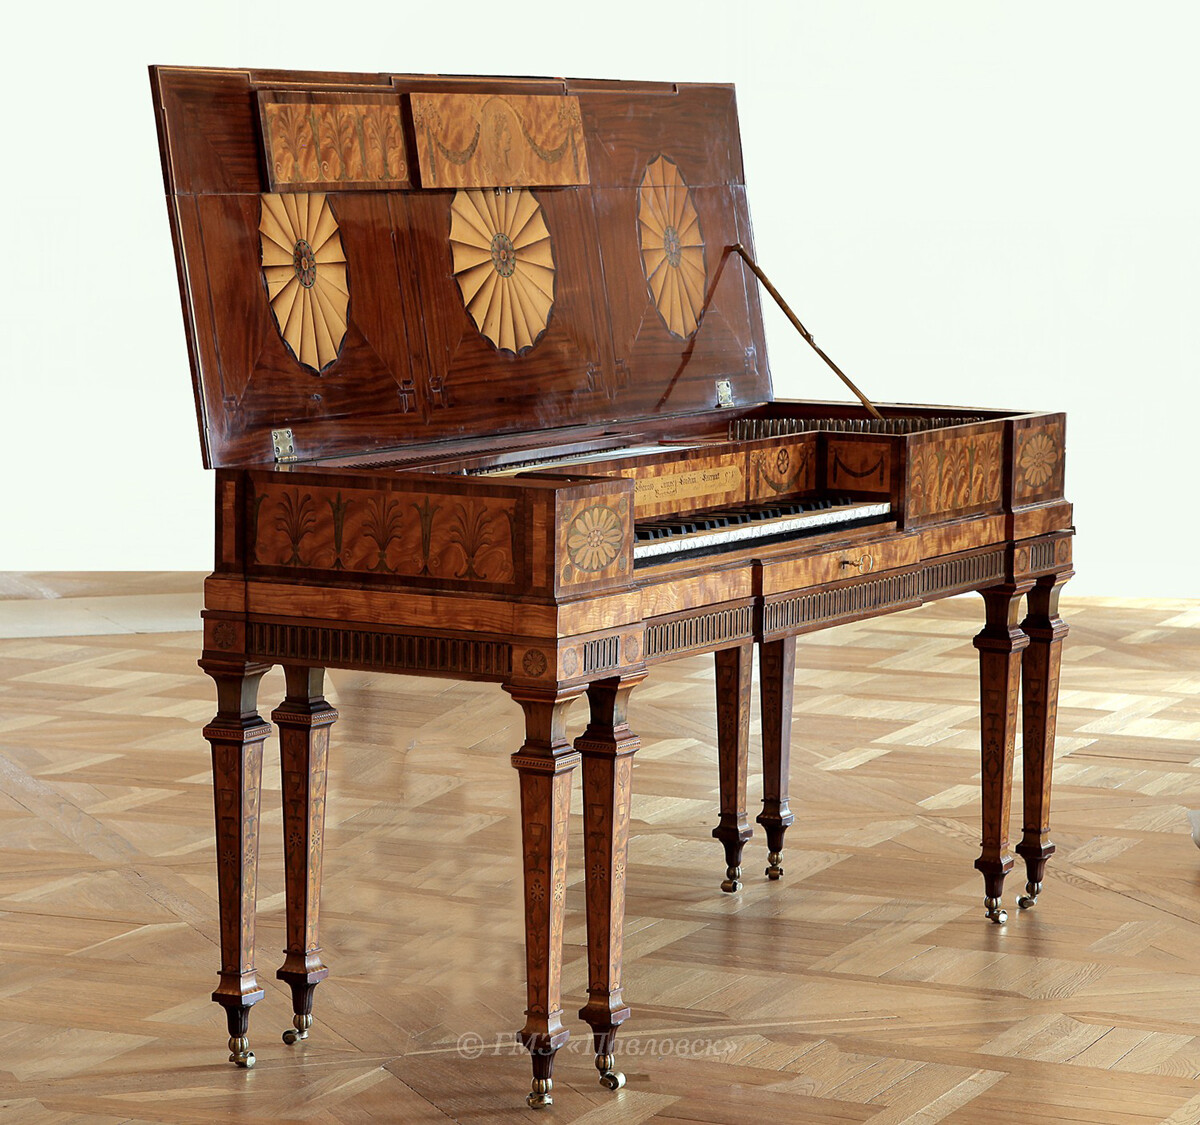 Un piano cuadrado fabricado por Johannes Zumpe (1726-1783), propiedad de la emperatriz María Fedorovna desde 1817.